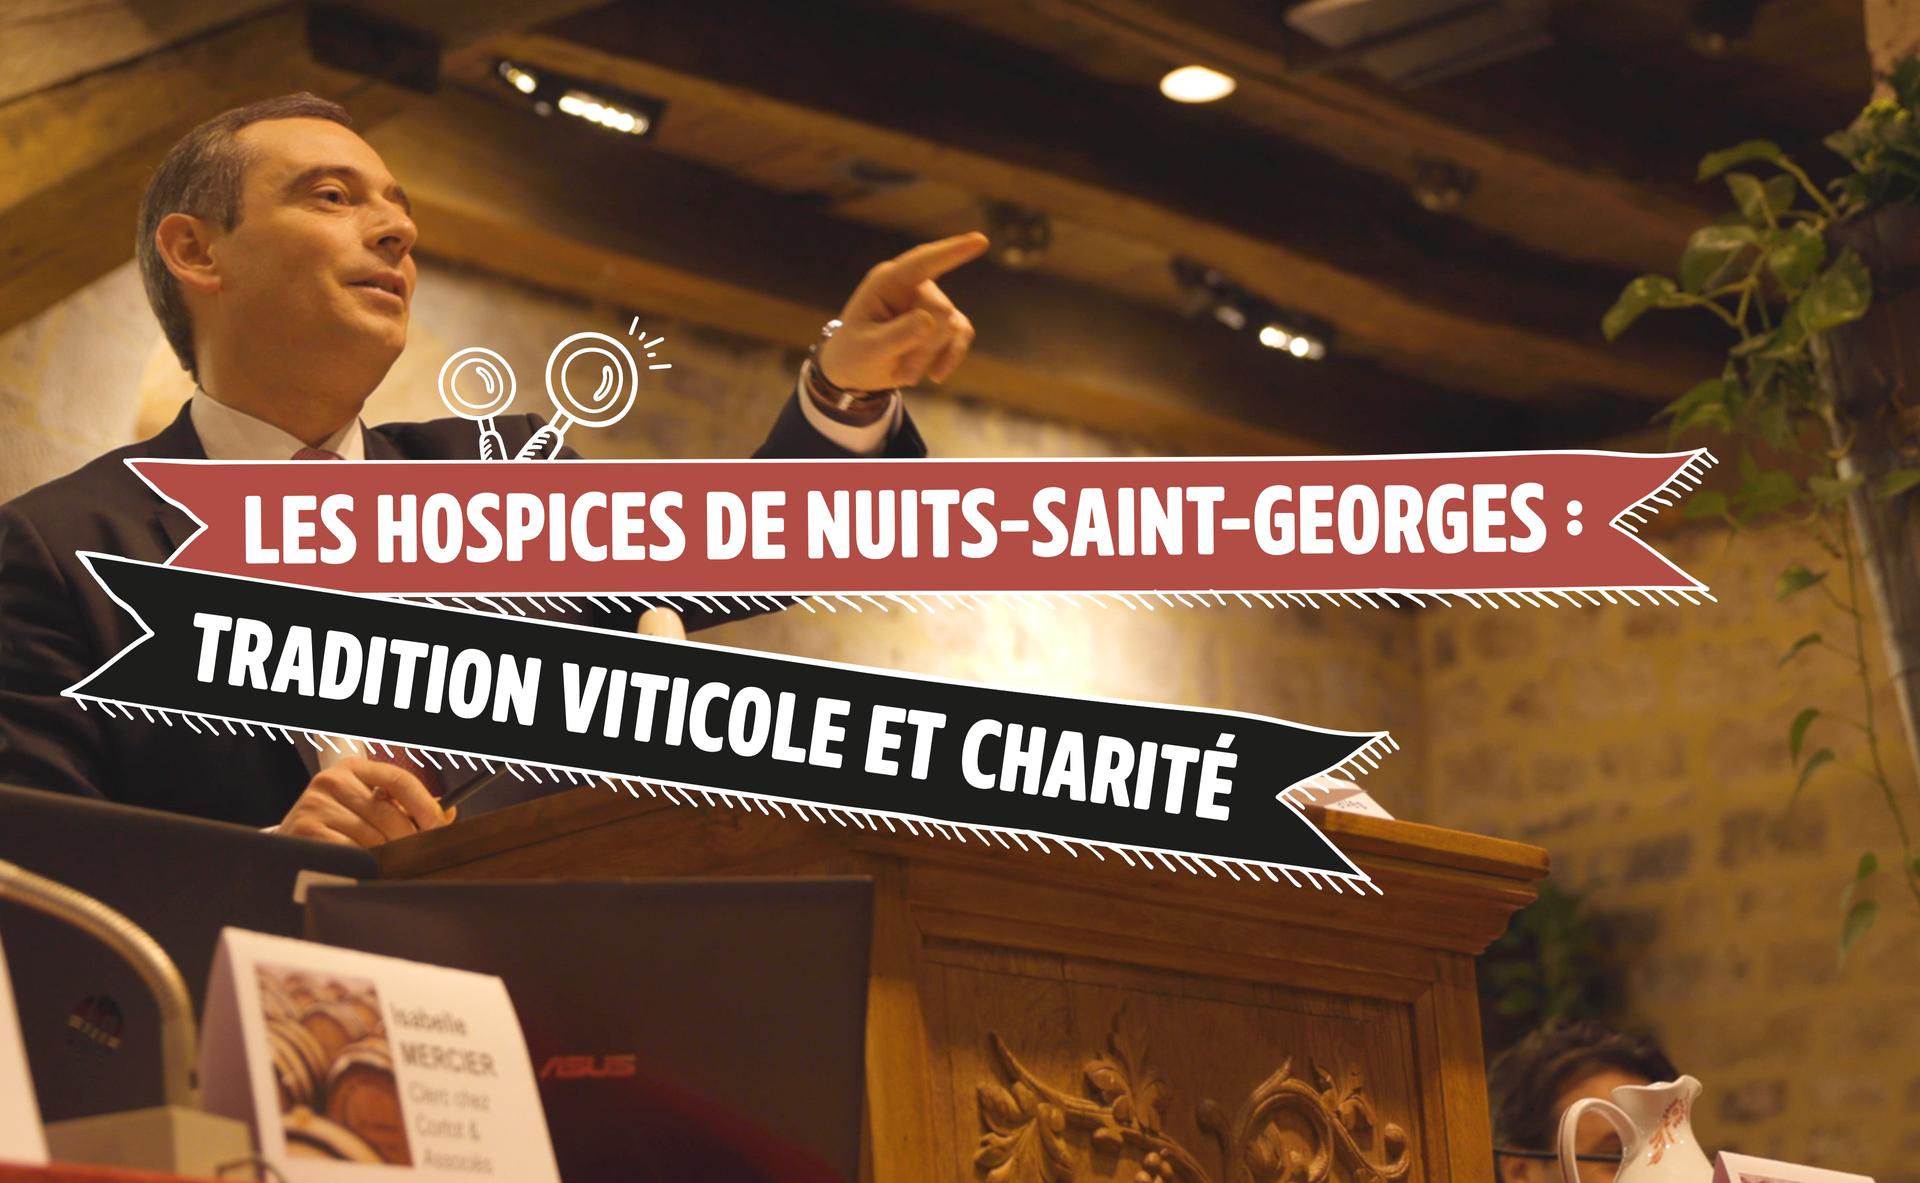 Les Hospices de Nuits-Saint-Georges : la rencontre entre tradition viticole et charité